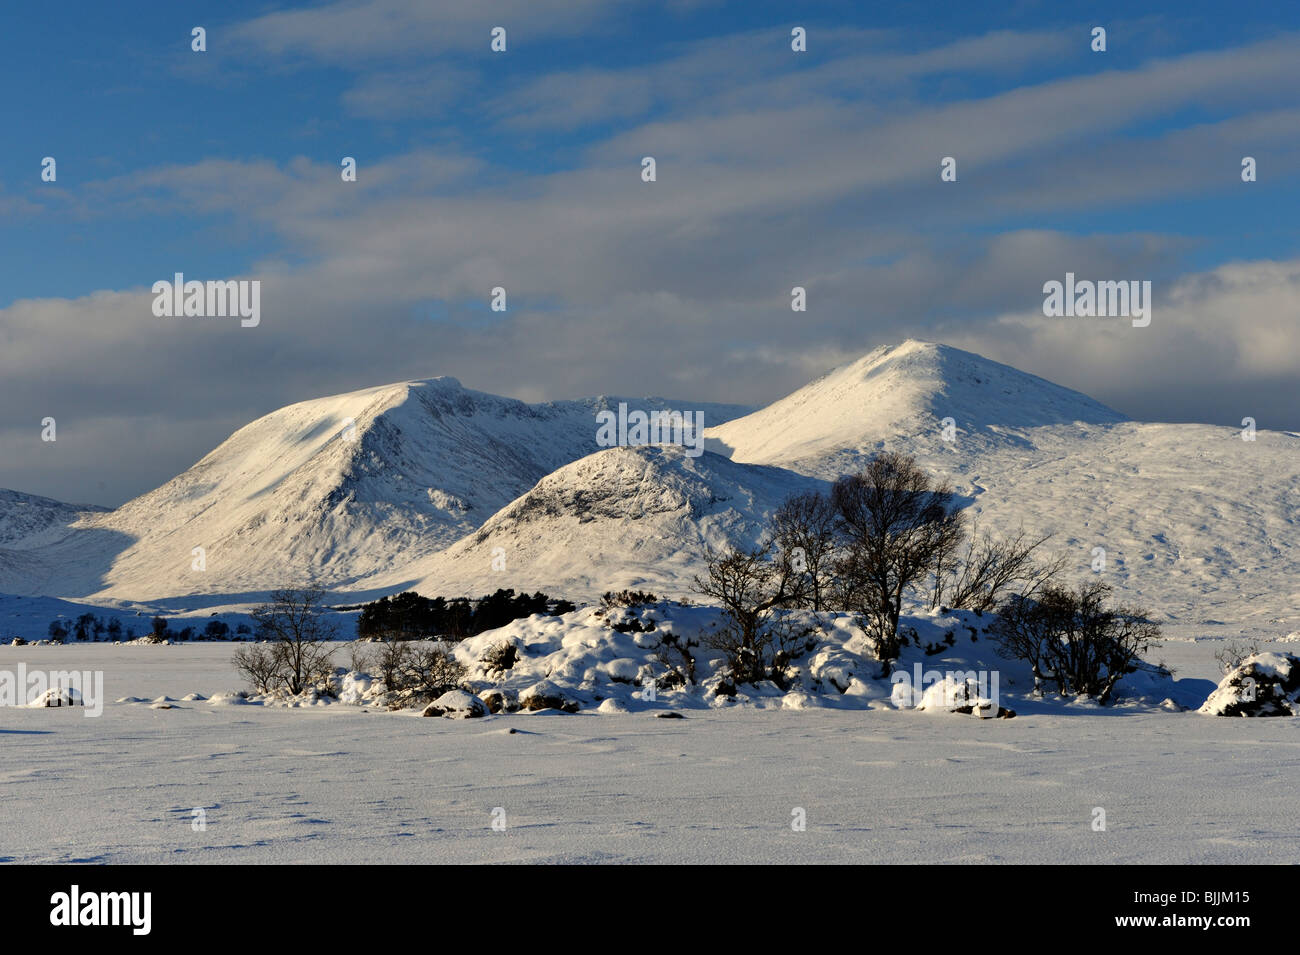 Struttura rocciosa-isola ricoperta in frozen coperte di neve sul lago con sfondo innevato delle montagne e il cielo blu scuro Foto Stock